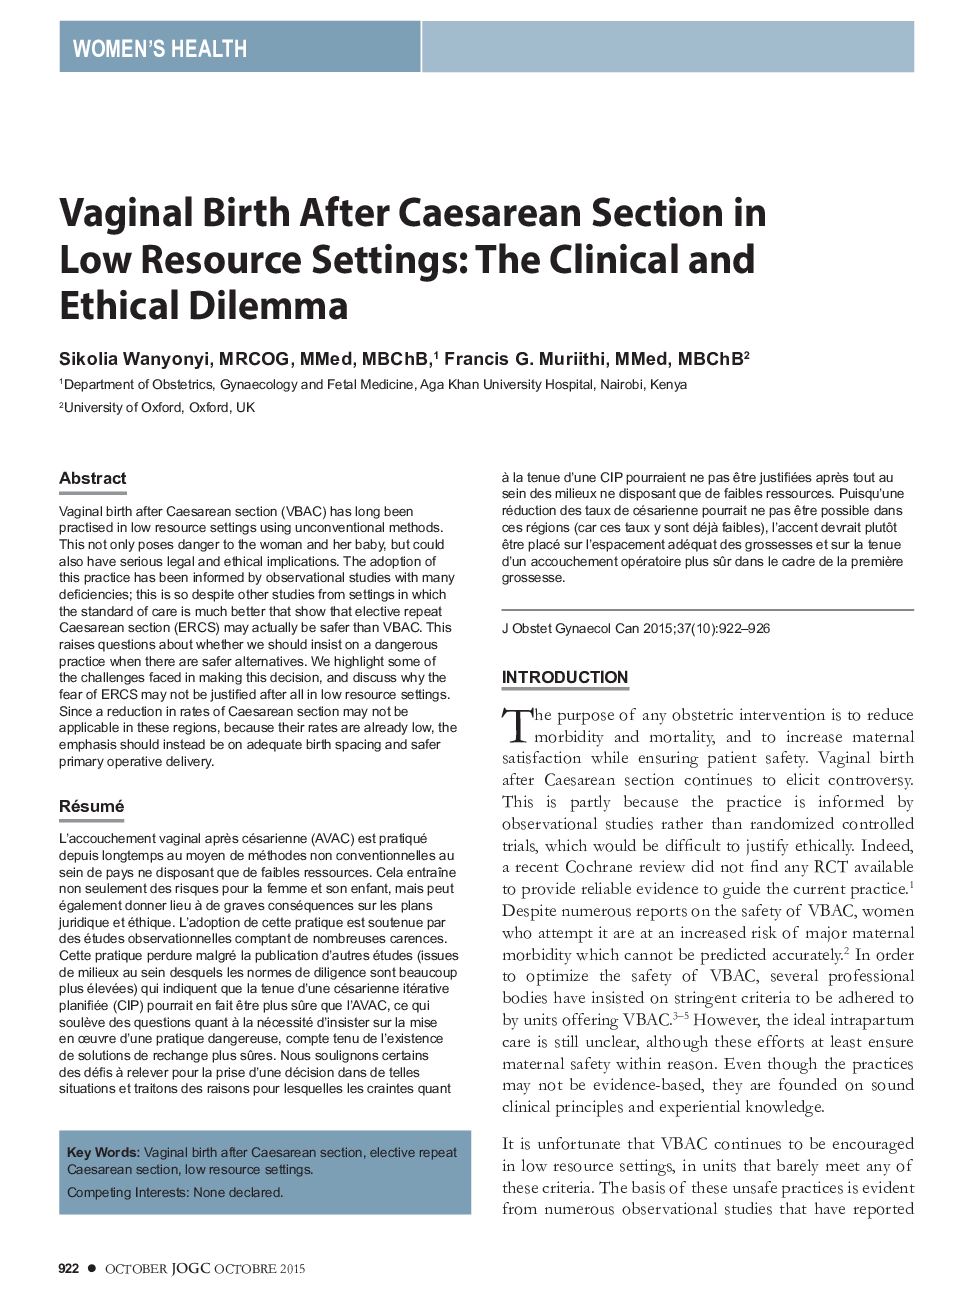 تولد واژن پس از سزارین در تنظیمات کمینه منابع: معضل بالینی و اخلاقی 